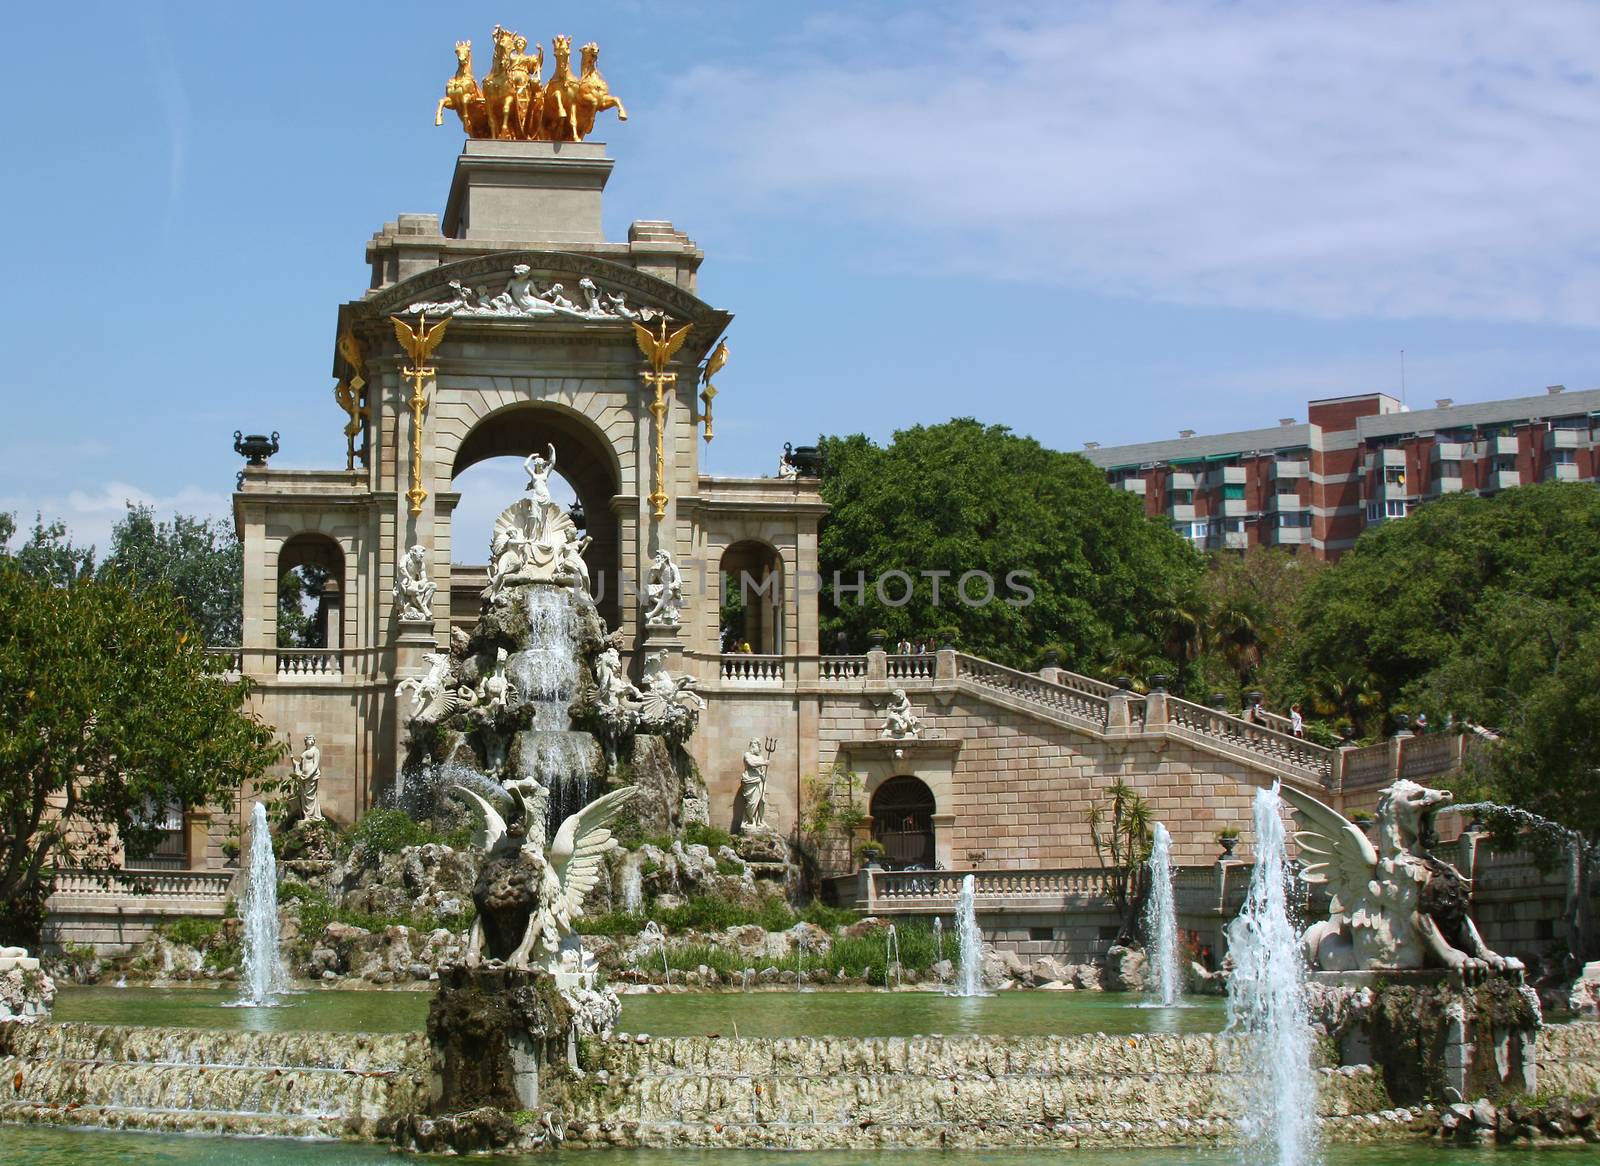 Fountain in the Park de la Ciutadella in Barcelona